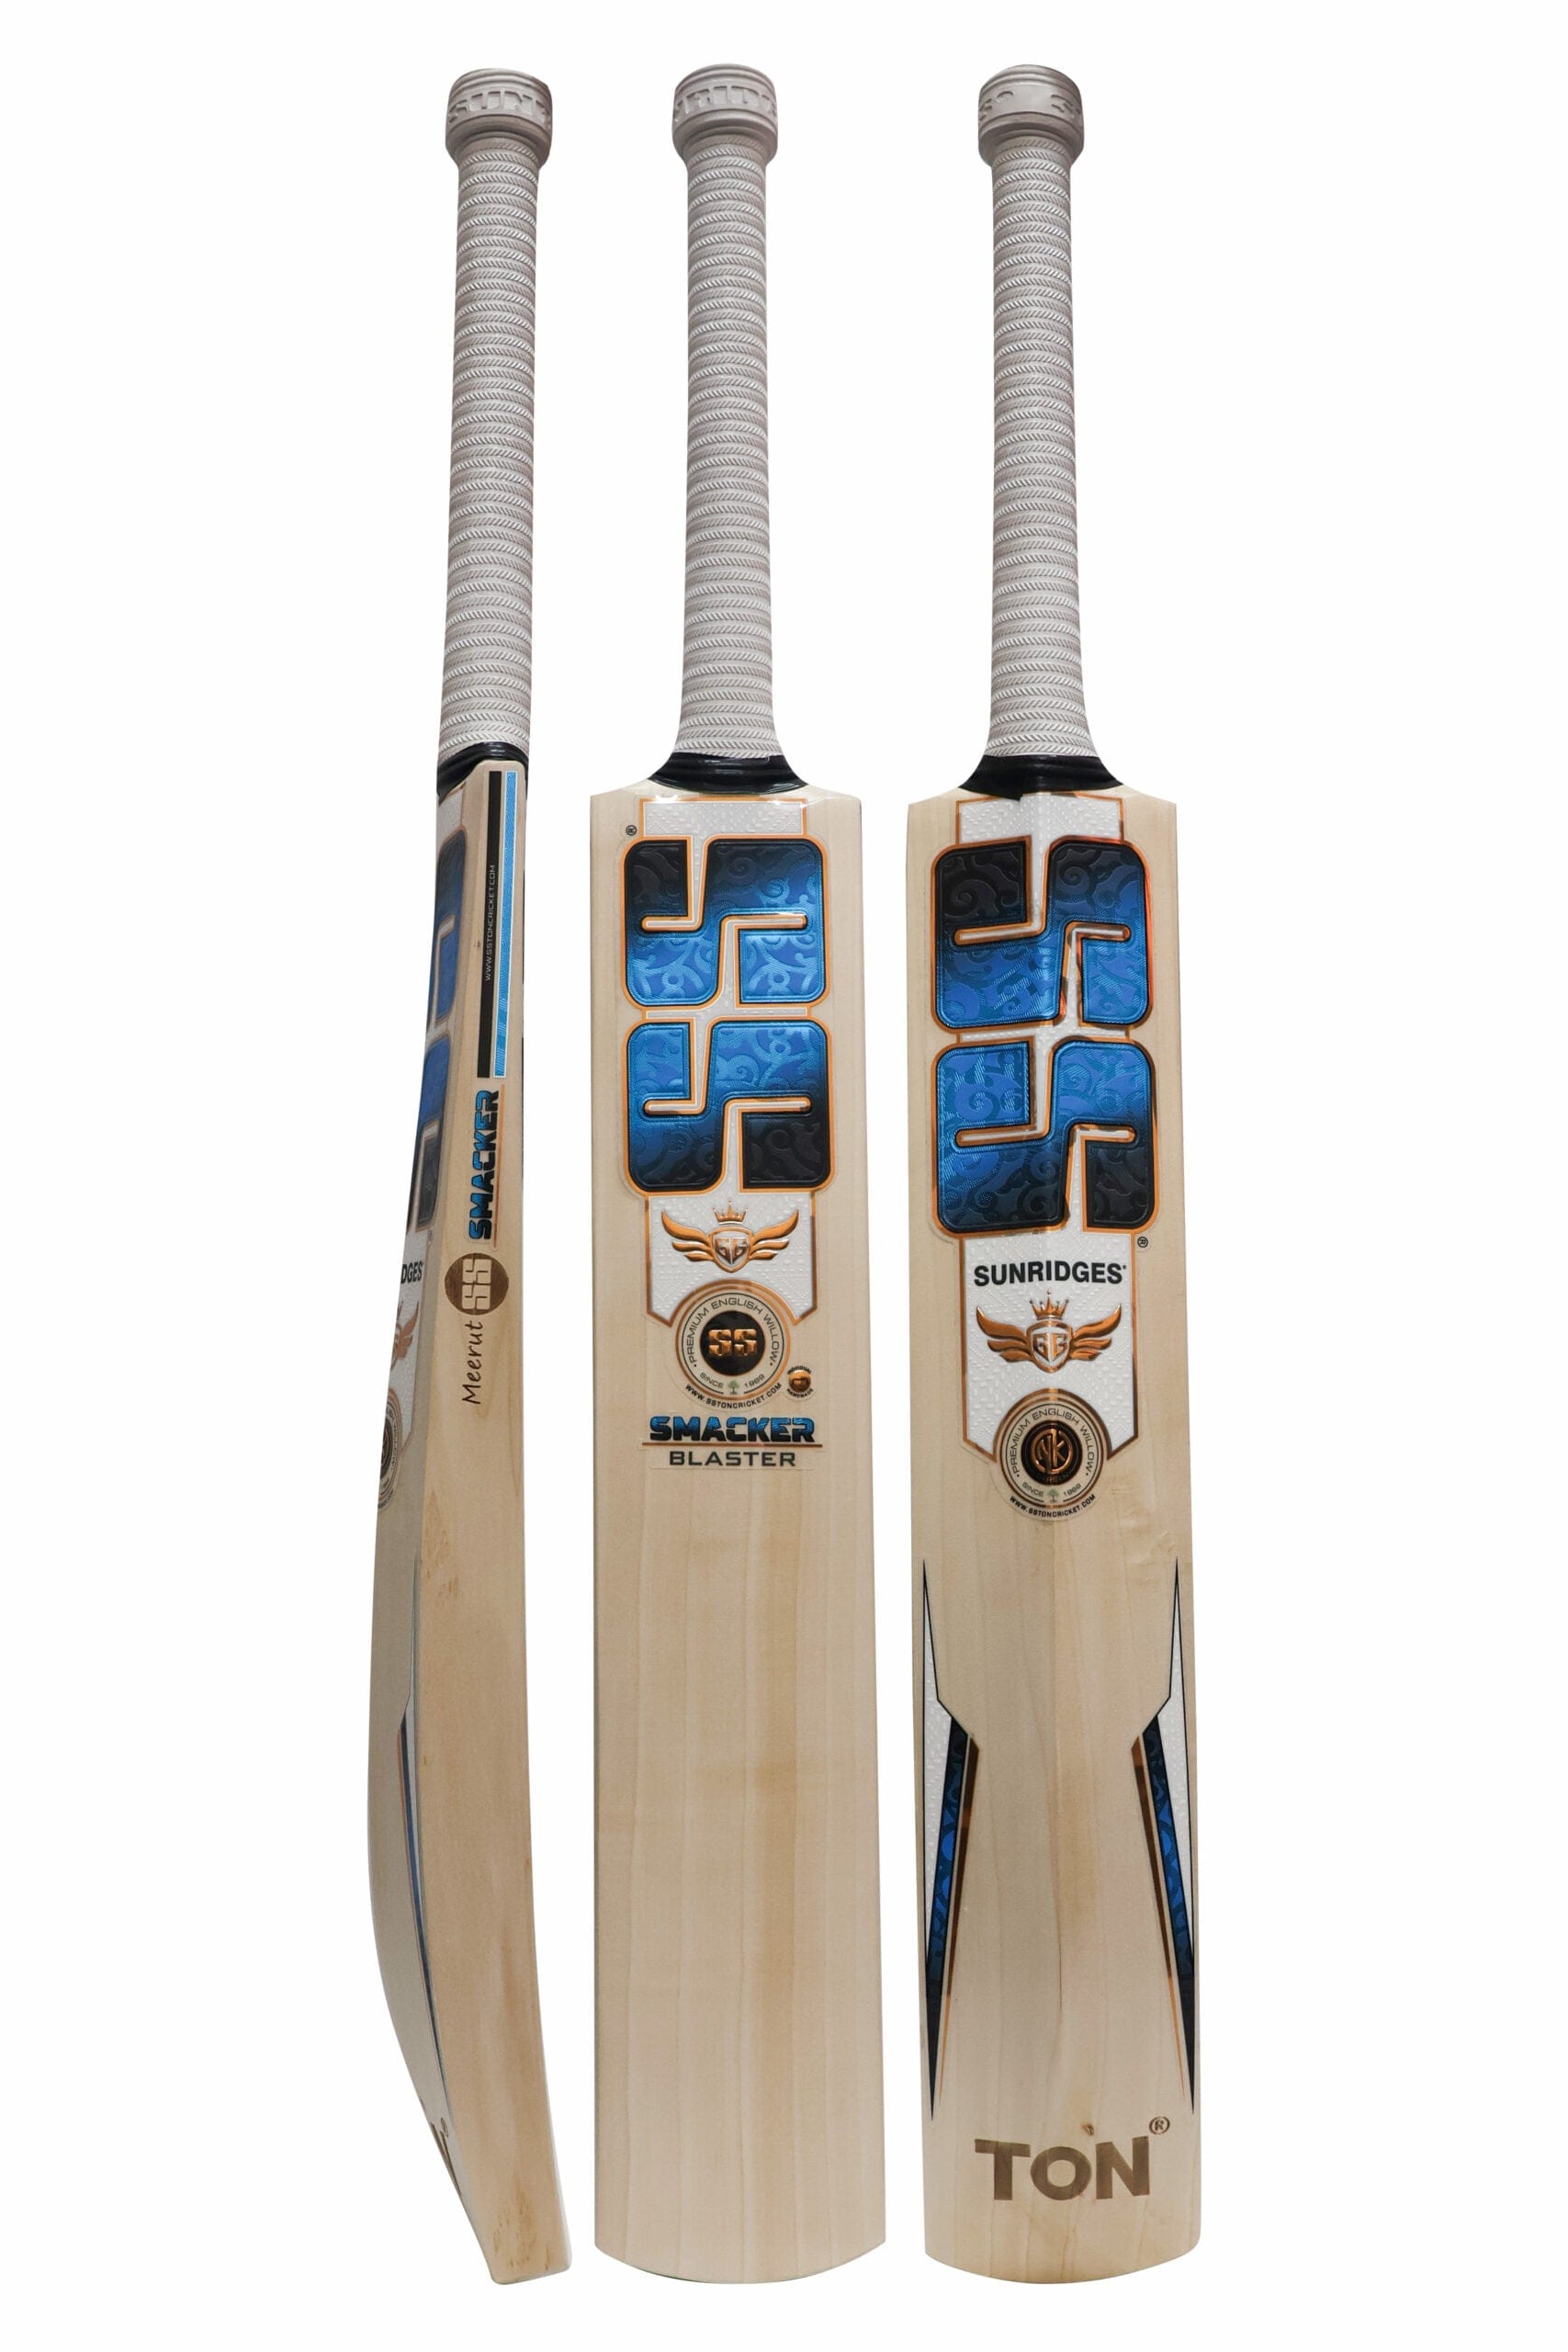 SS Cricket Bats Short Handle / Light 2lbs 8oz - 2lbs 10oz SS GG Smacker Blaster Adult Cricket Bat